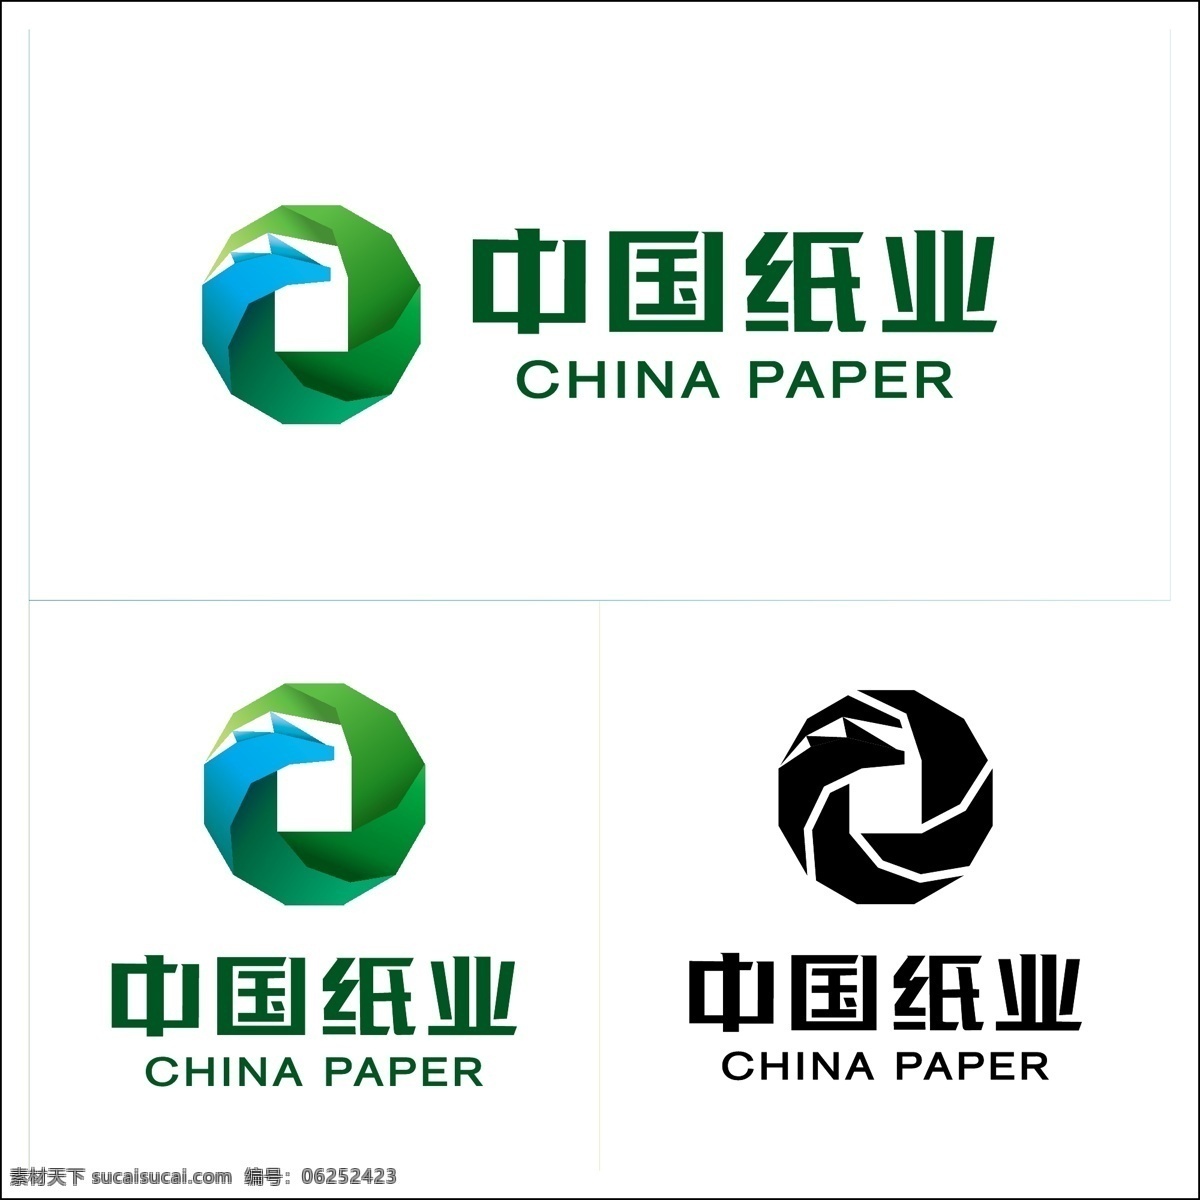 中国纸业 logo logo设计 纸业 圆形 中国 矢量logo 绿色 反白 vi 渐变 标志图标 企业 标志